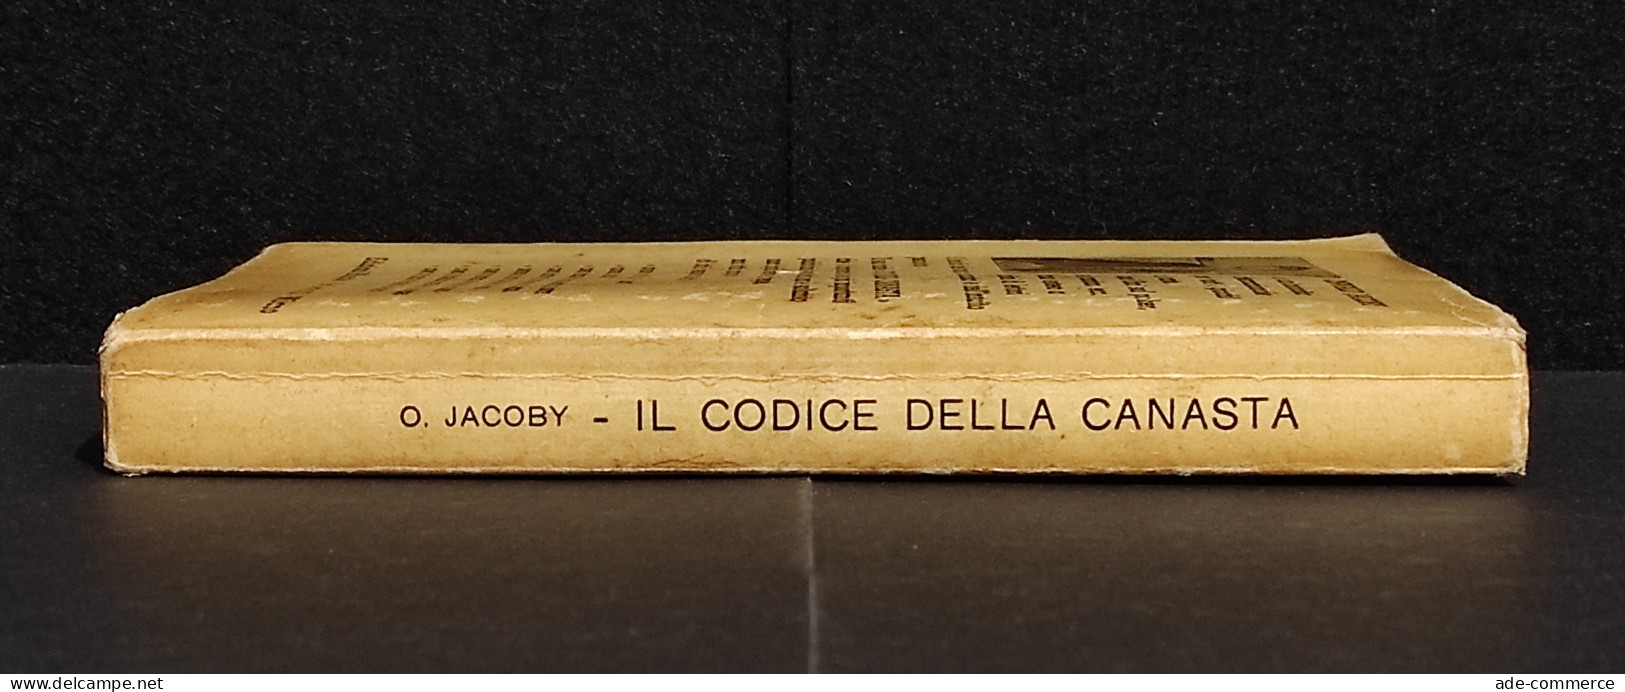 Il Codice Della Canasta - Oswald Jacoby - Ed. Riunite - 1950 - Handbücher Für Sammler